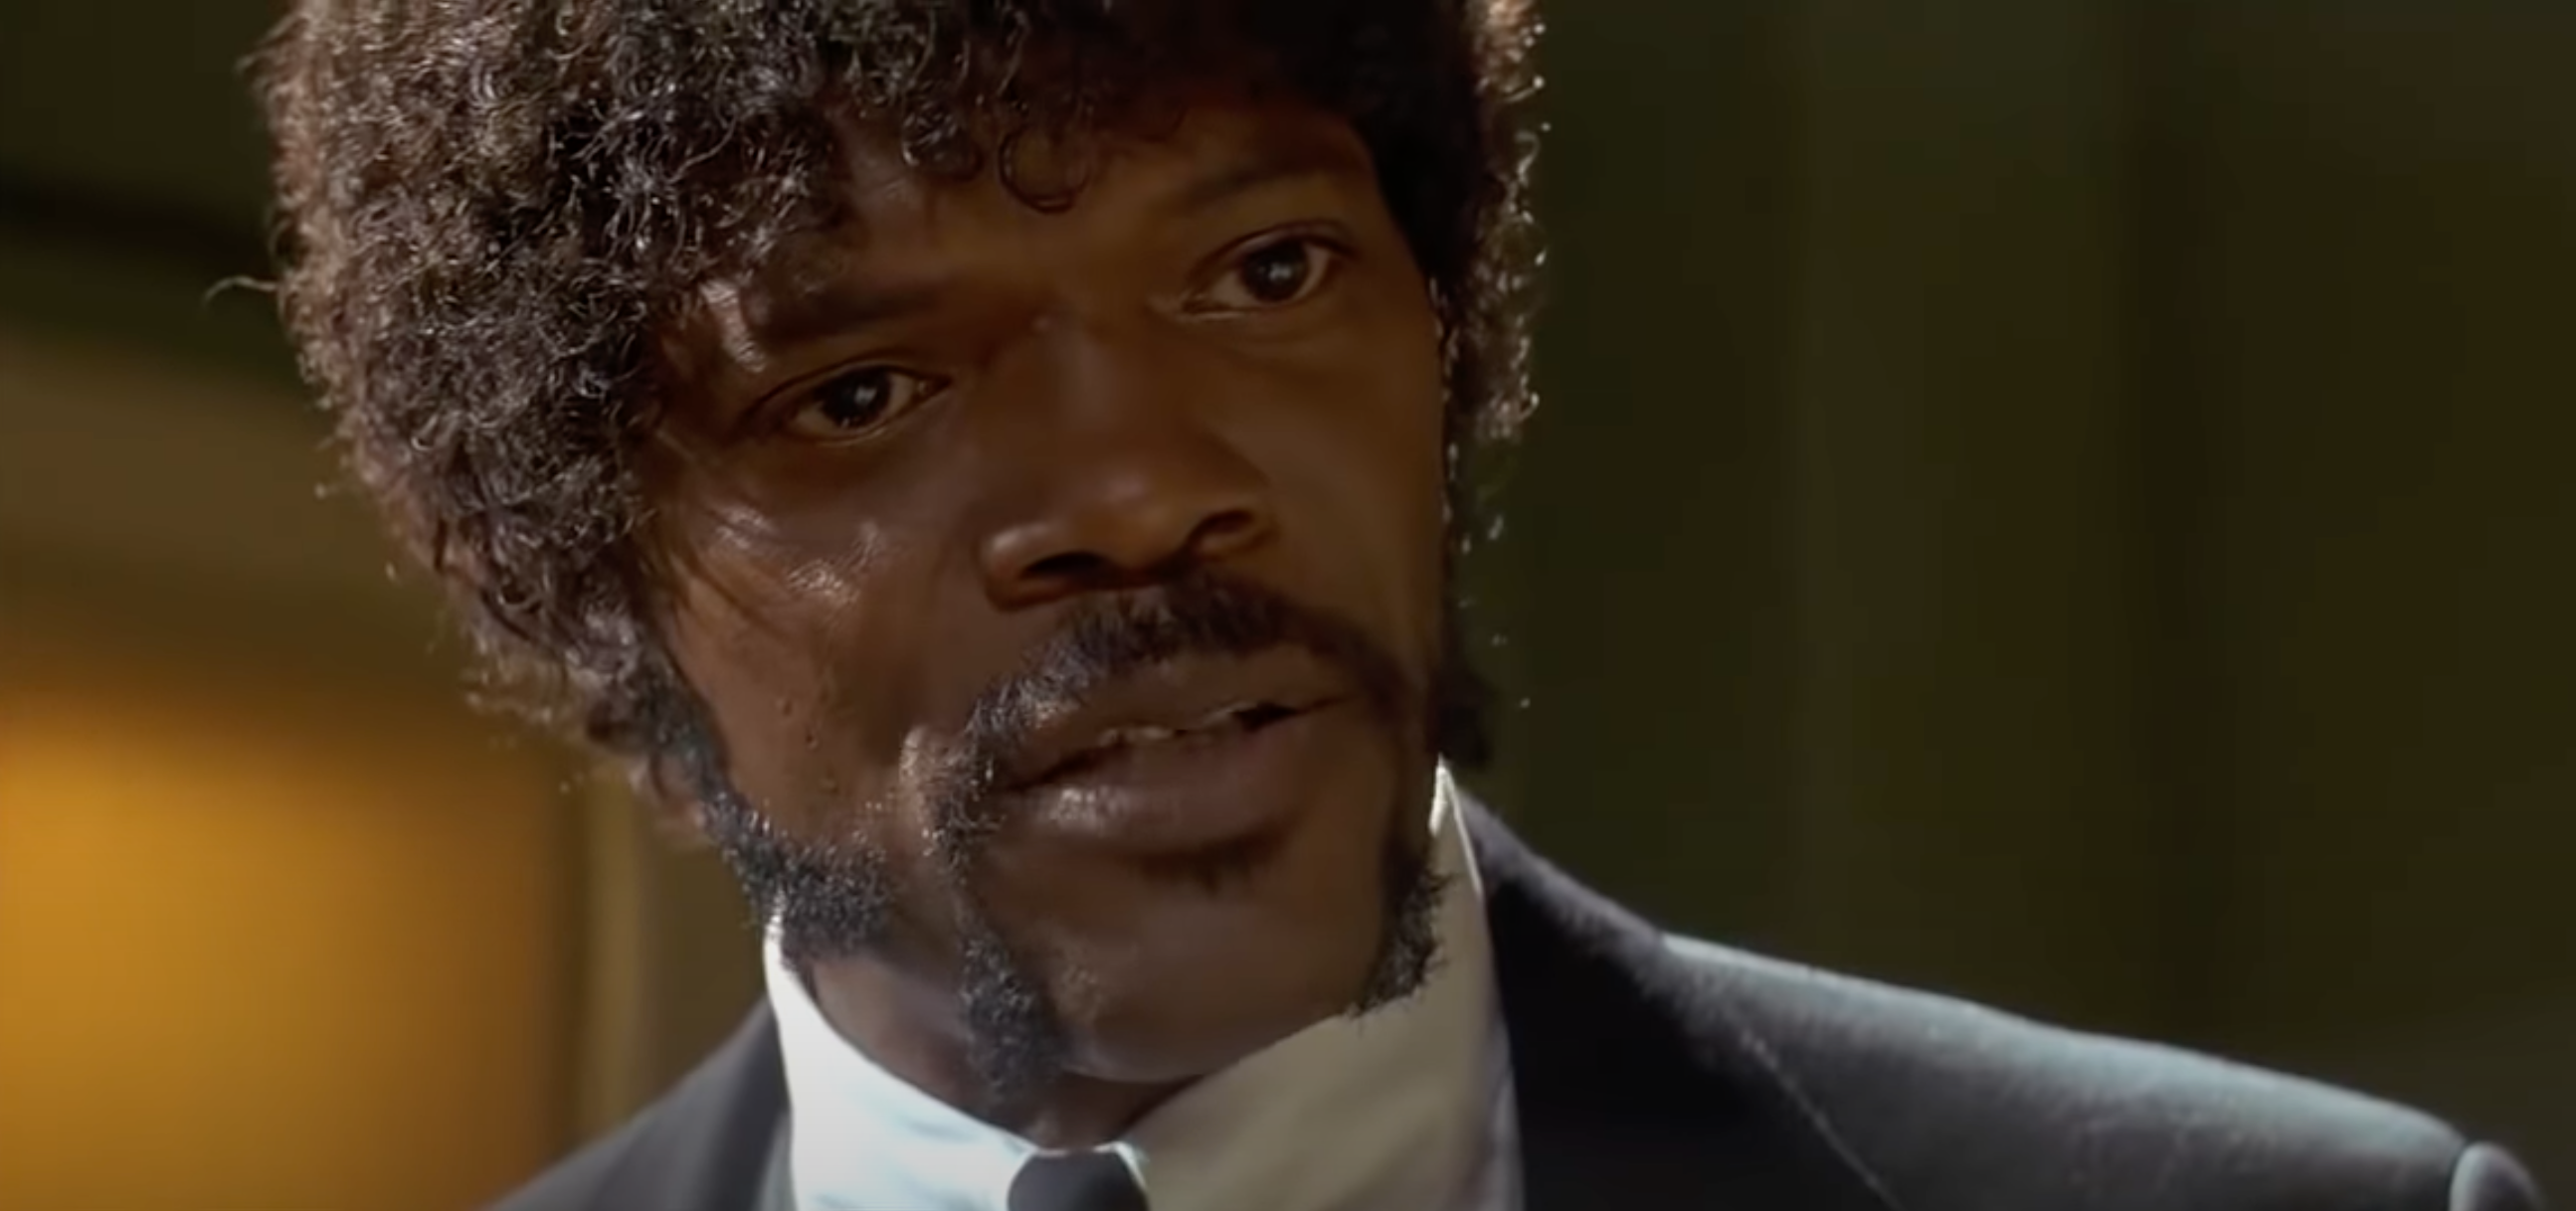 Samuel L. Jackson knows he should’ve won the Oscar for Pulp Fiction